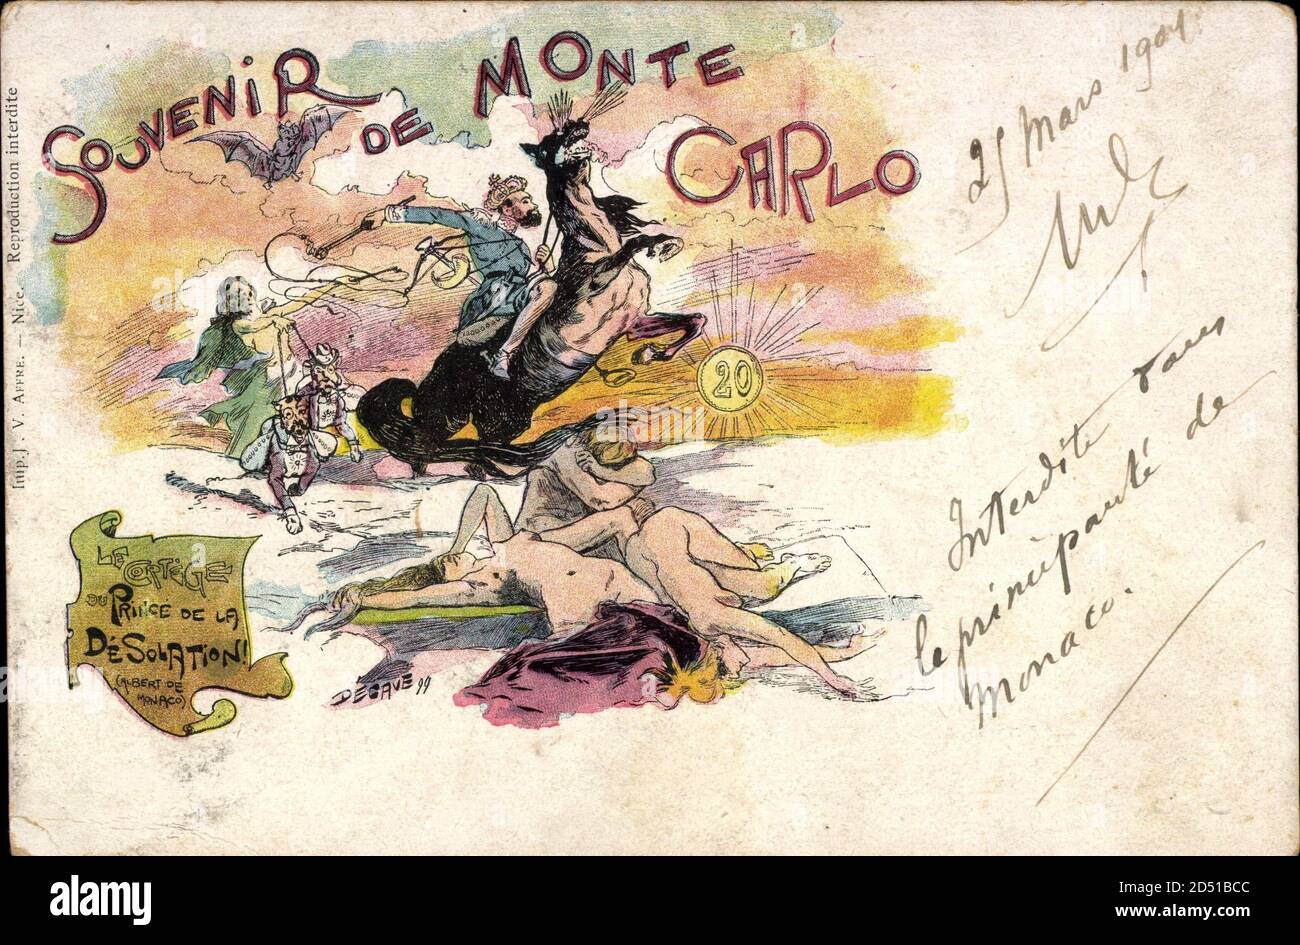 Von Monaco, Prince de la Desolation, Karikatur, Tote | uso en todo el mundo Foto de stock